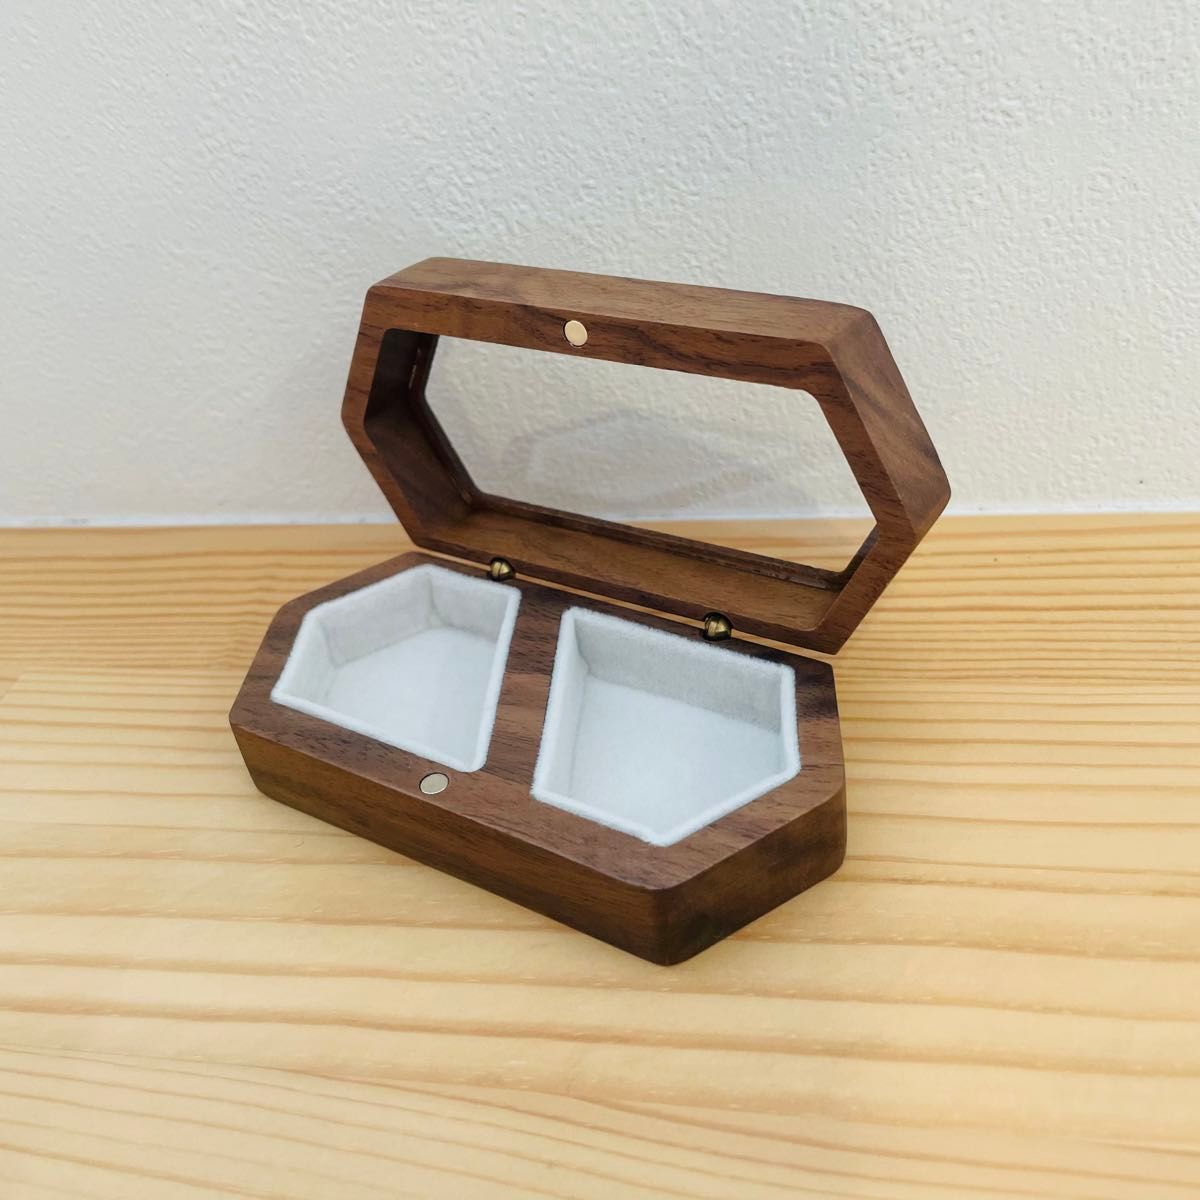 ジュエリーボックス 木製 リングケース 指輪 アクセサリーボックス 小物入れ 収納 アクセサリーケース プレゼント お洒落